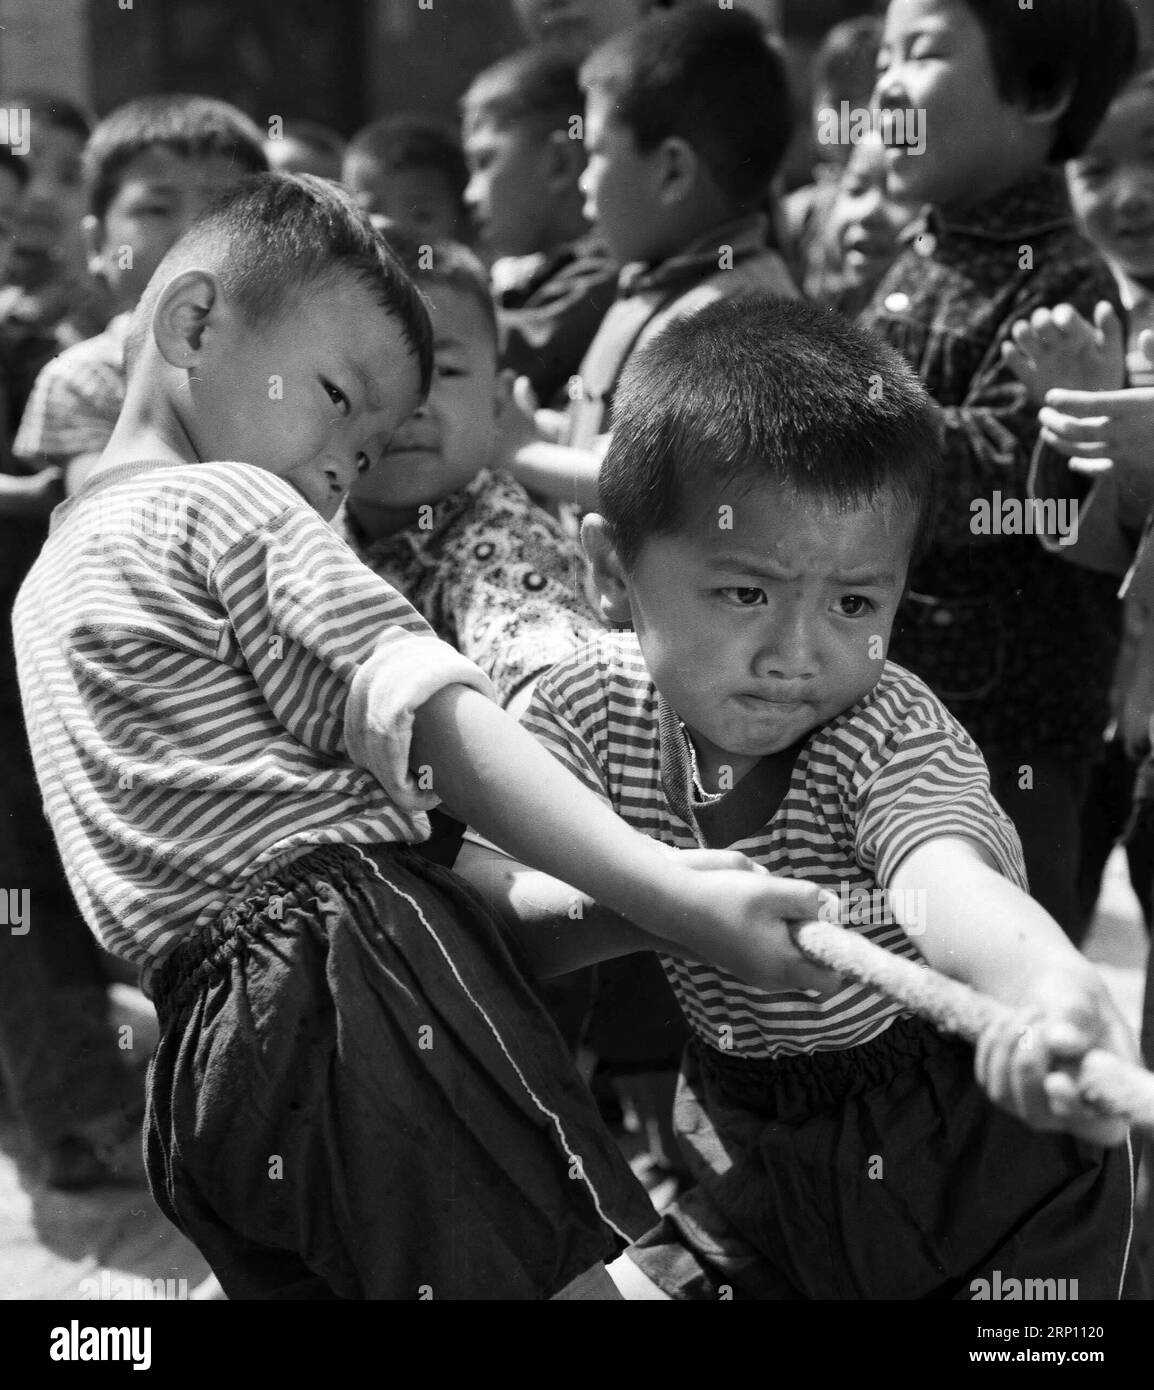 (180602) -- PEKING, 2. Juni 2018 () -- das im Mai 1978 aufgenommene Aktenfoto zeigt Kinder, die an einem Spiel des Tauziehen-Wettbewerbs in einem Kindergarten in Sanmenxia, der zentralchinesischen Provinz Henan, teilnehmen. Dieses Set aus 41 alten Fotos, die von 1978 bis 2018 im Jahr aufgenommen wurden, zeichnet die Kindheitsmomente chinesischer Kinder in den letzten vier Jahrzehnten bildhaft auf. () (ry) CHINA-OLD PHOTOS-CHILDHOOD-PICTORIAL RECORD (CN) Xinhua PUBLICATIONxNOTxINxCHN Stockfoto